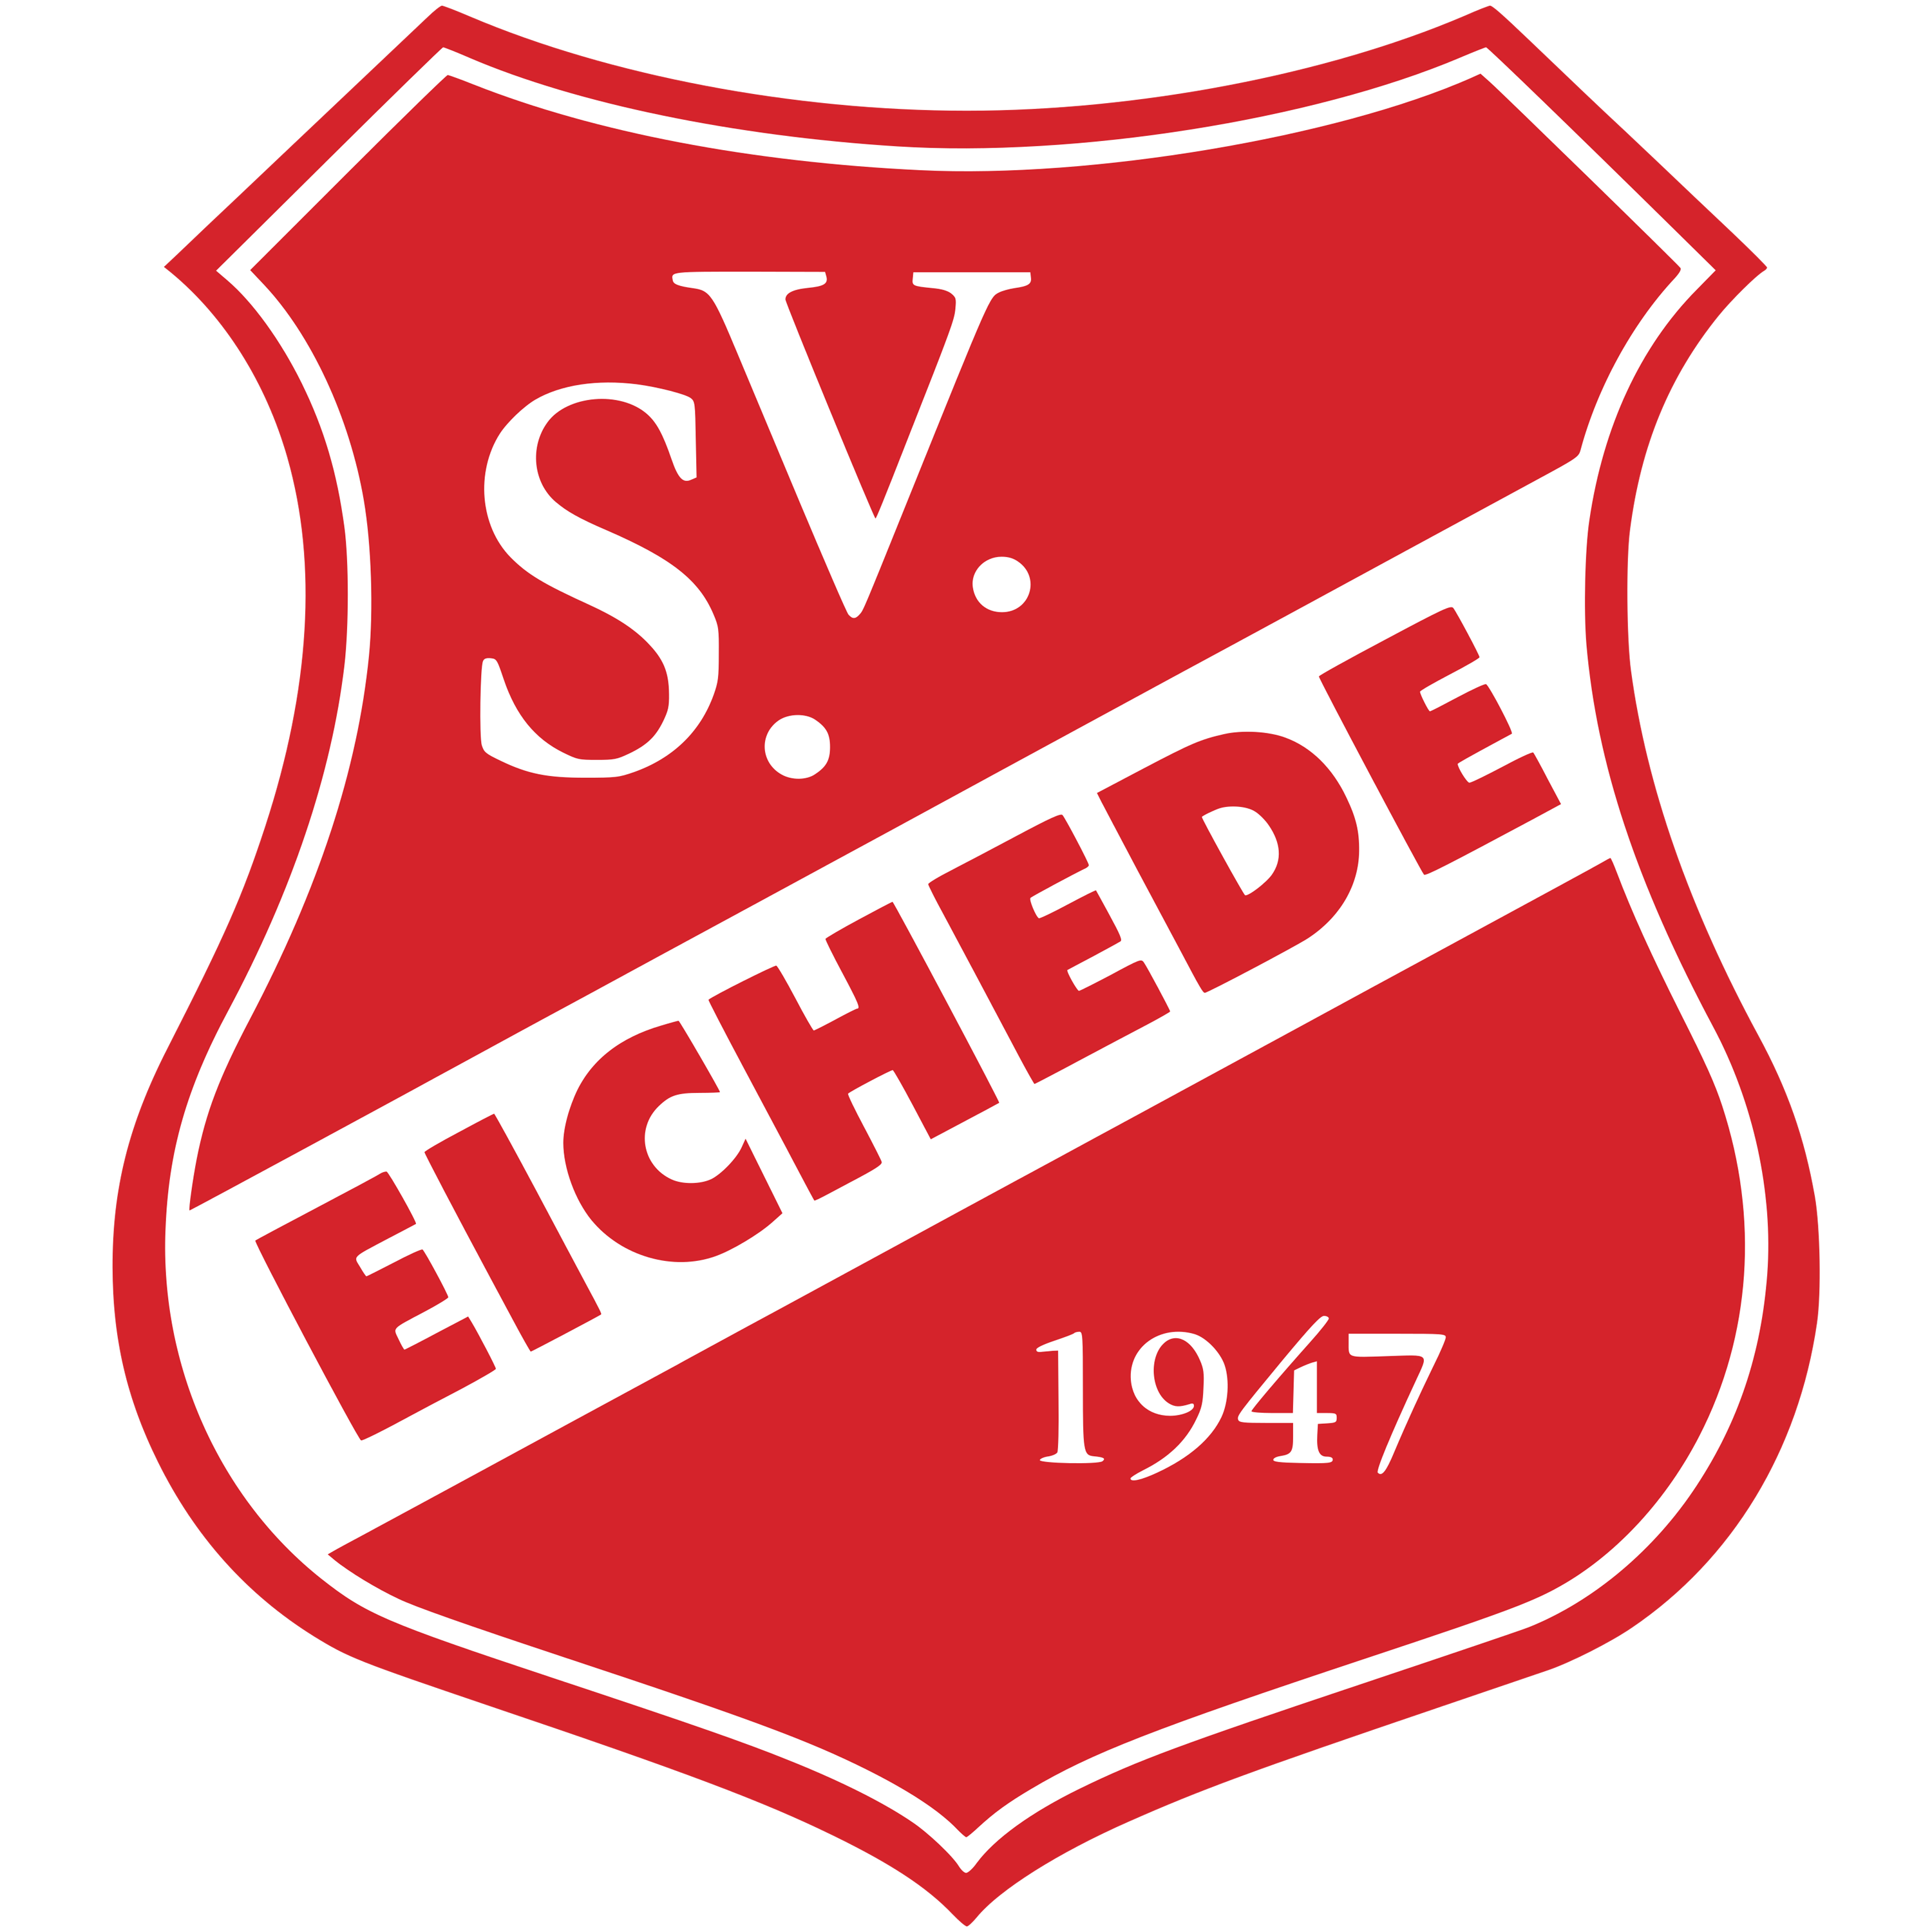 SV Eichede Logo  Transparent Image